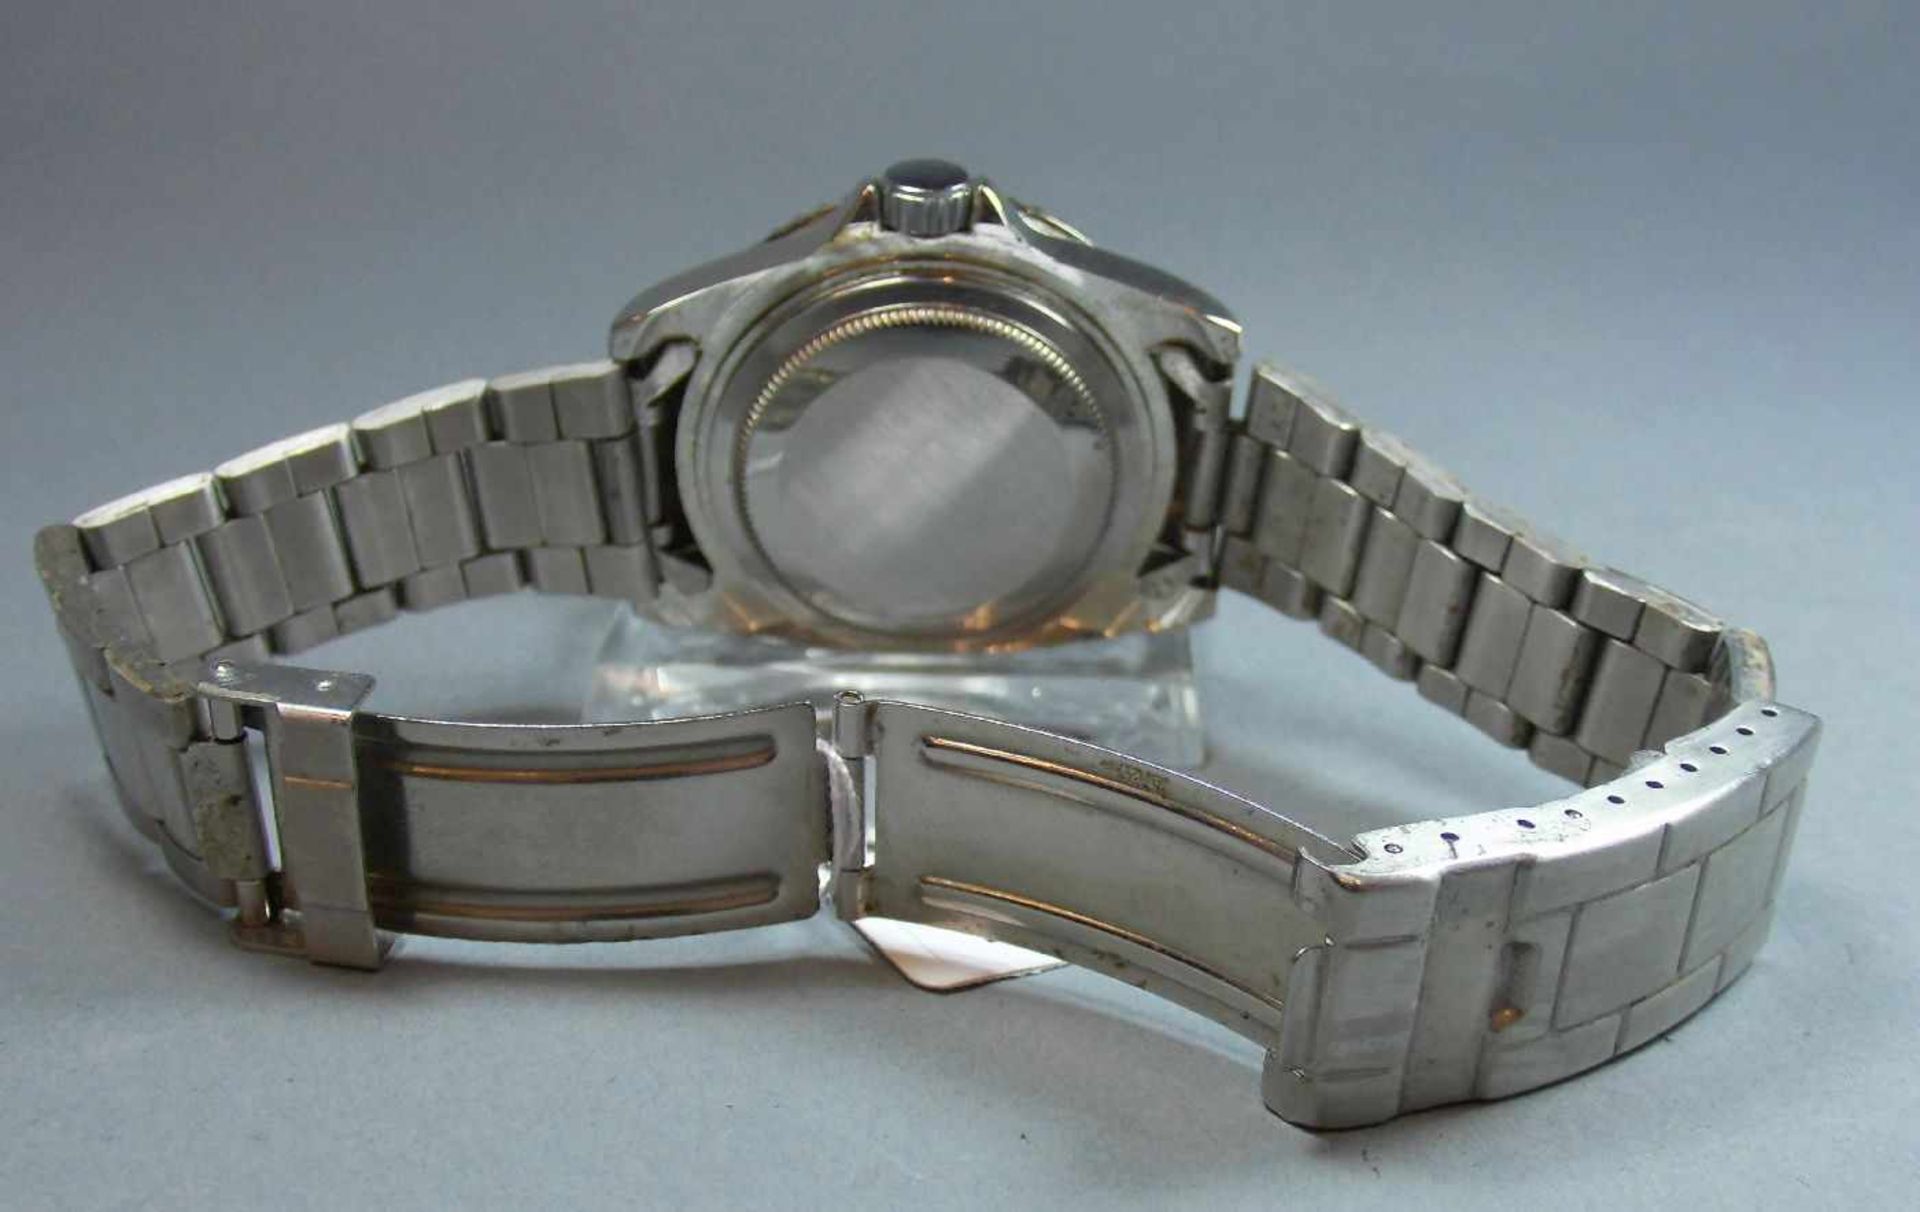 ARMBANDUHR : SEWOR / wristwatch, Automatik- Uhr. Rundes Stahlgehäuse mit Gliederarmband und - Bild 5 aus 6